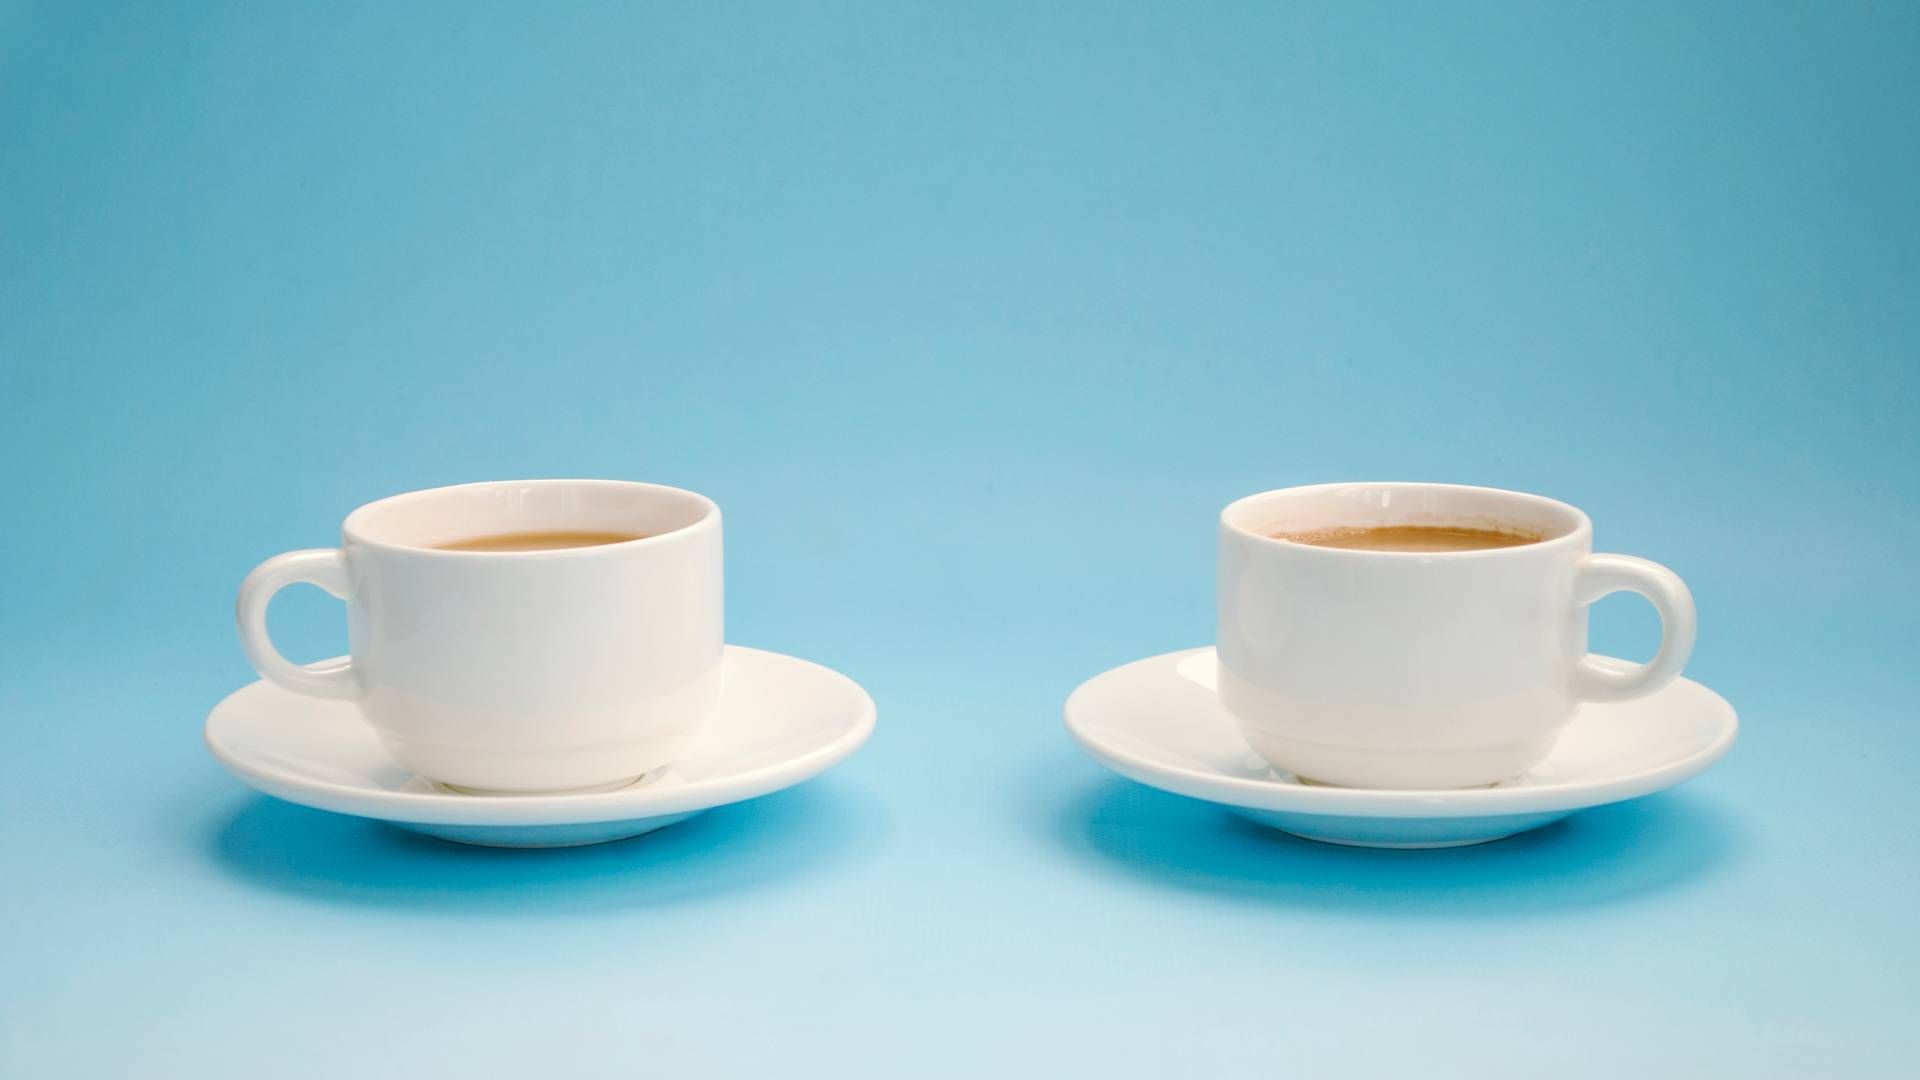 Hvordan gør vi kaffemødet great again? Her er otte tips til at få dine kaffemøder til at sprudle. Kilde: Getty images